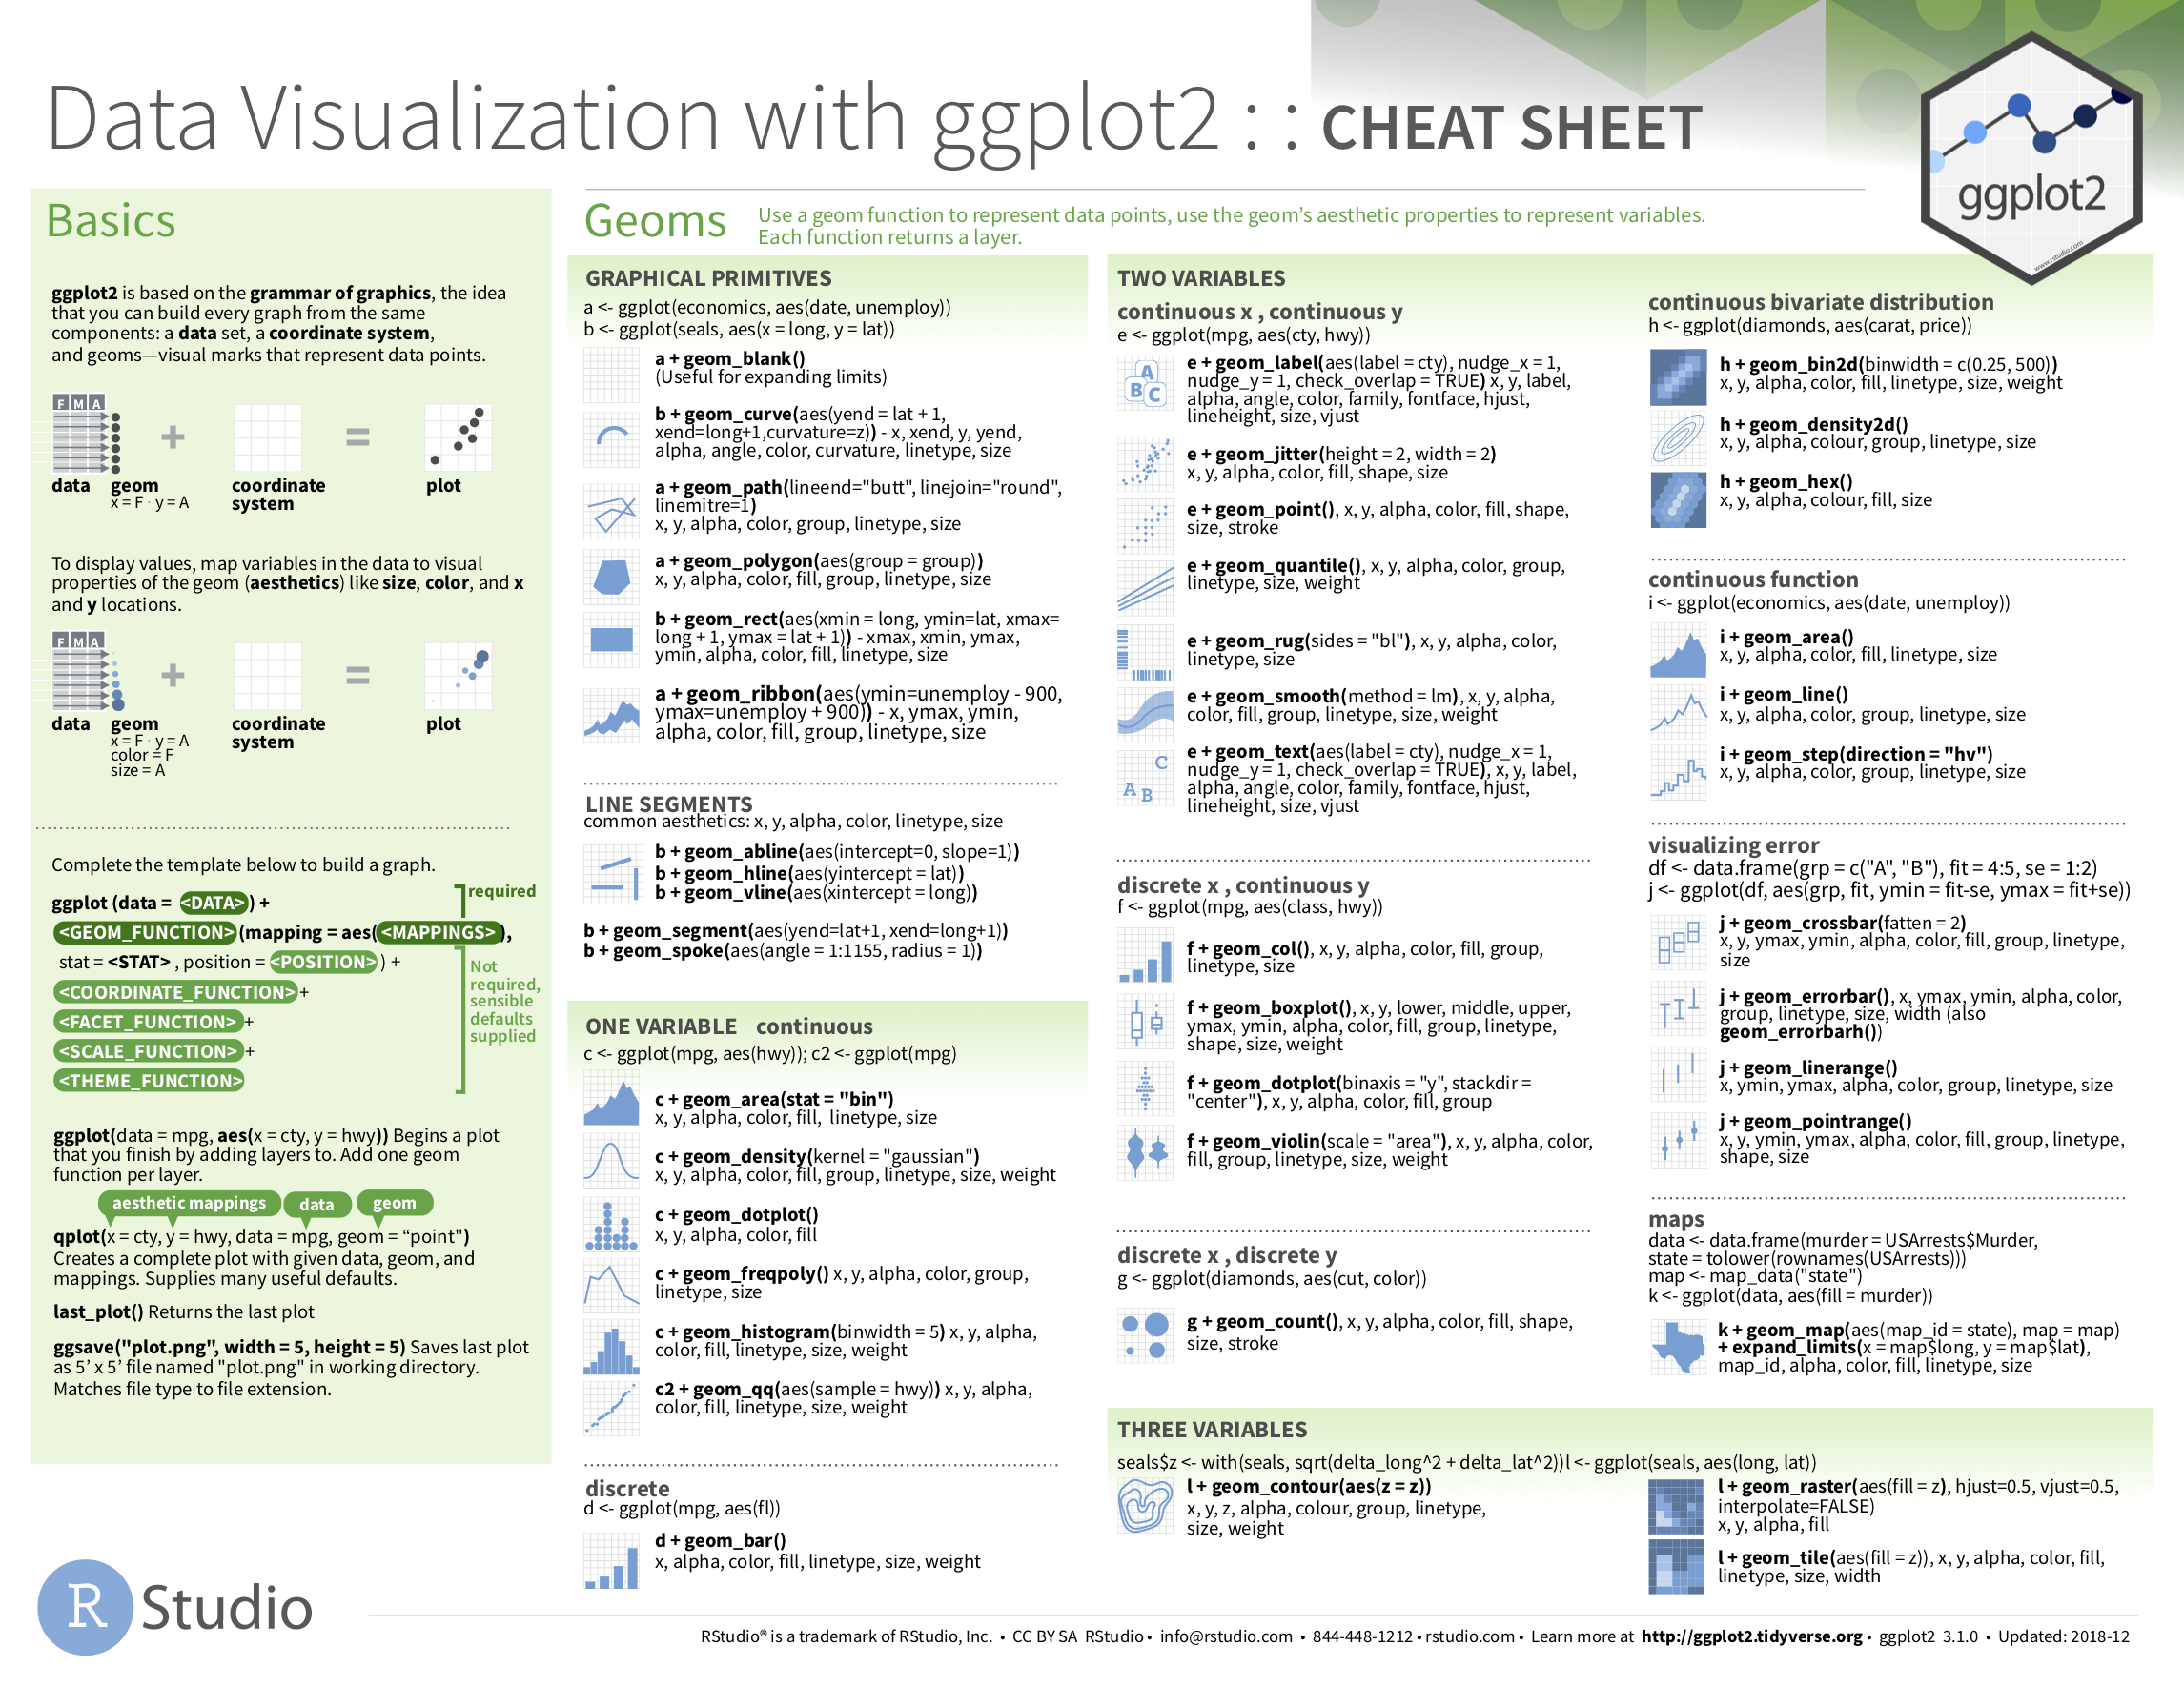 Data Visualization with ggplot2 cheatsheat.